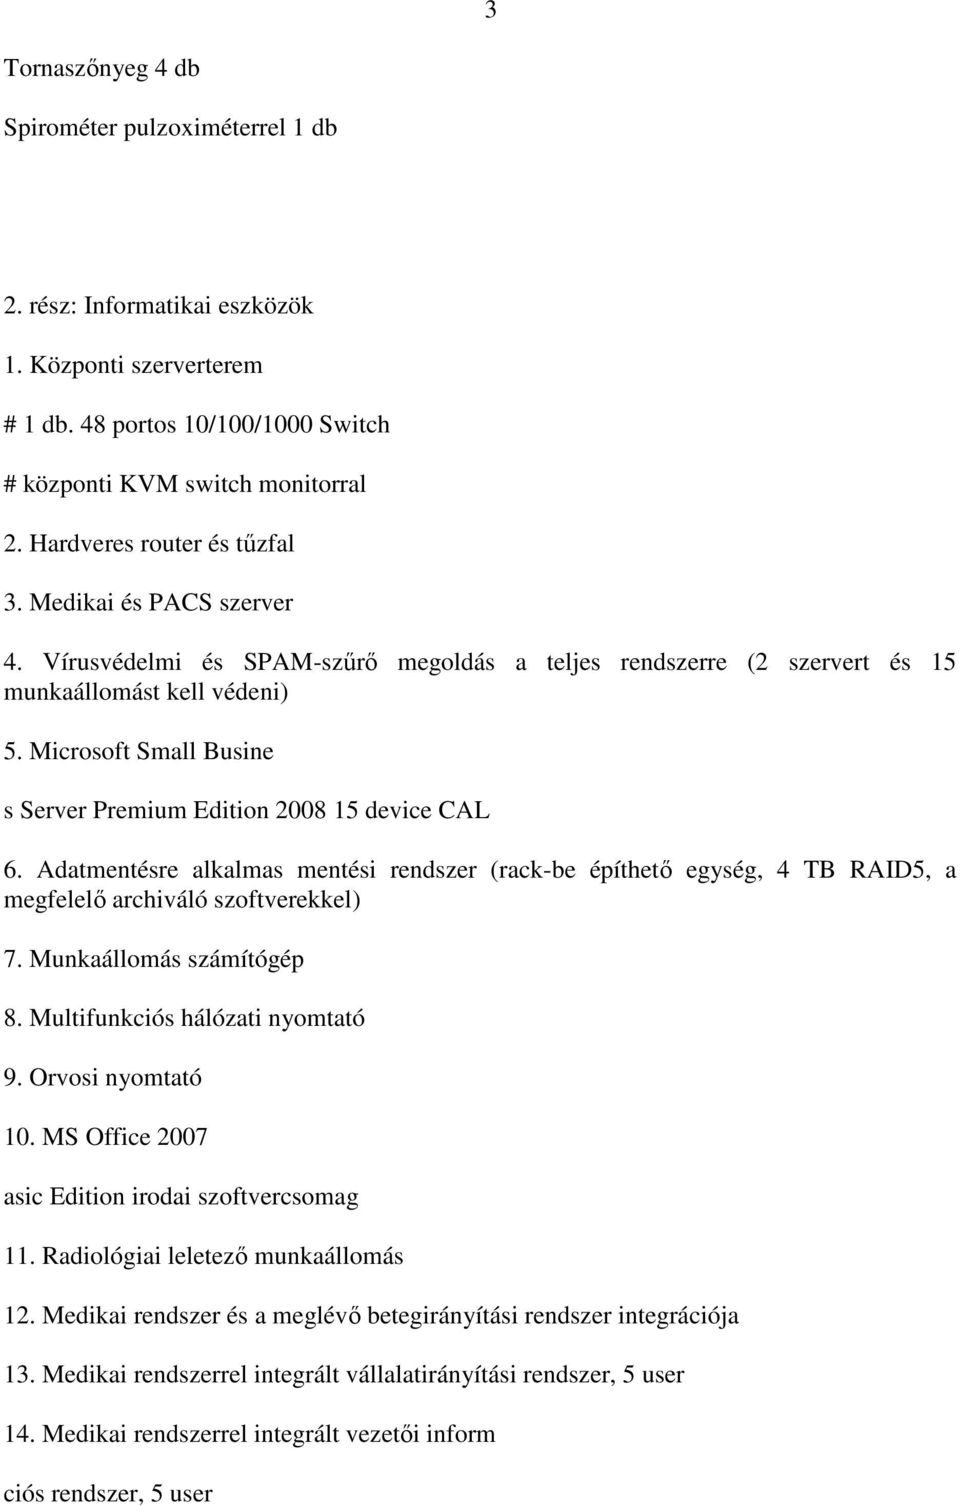 Microsoft Small Busine s Server Premium Edition 2008 15 device CAL 6. Adatmentésre alkalmas mentési rendszer (rack-be építhetı egység, 4 TB RAID5, a megfelelı archiváló szoftverekkel) 7.